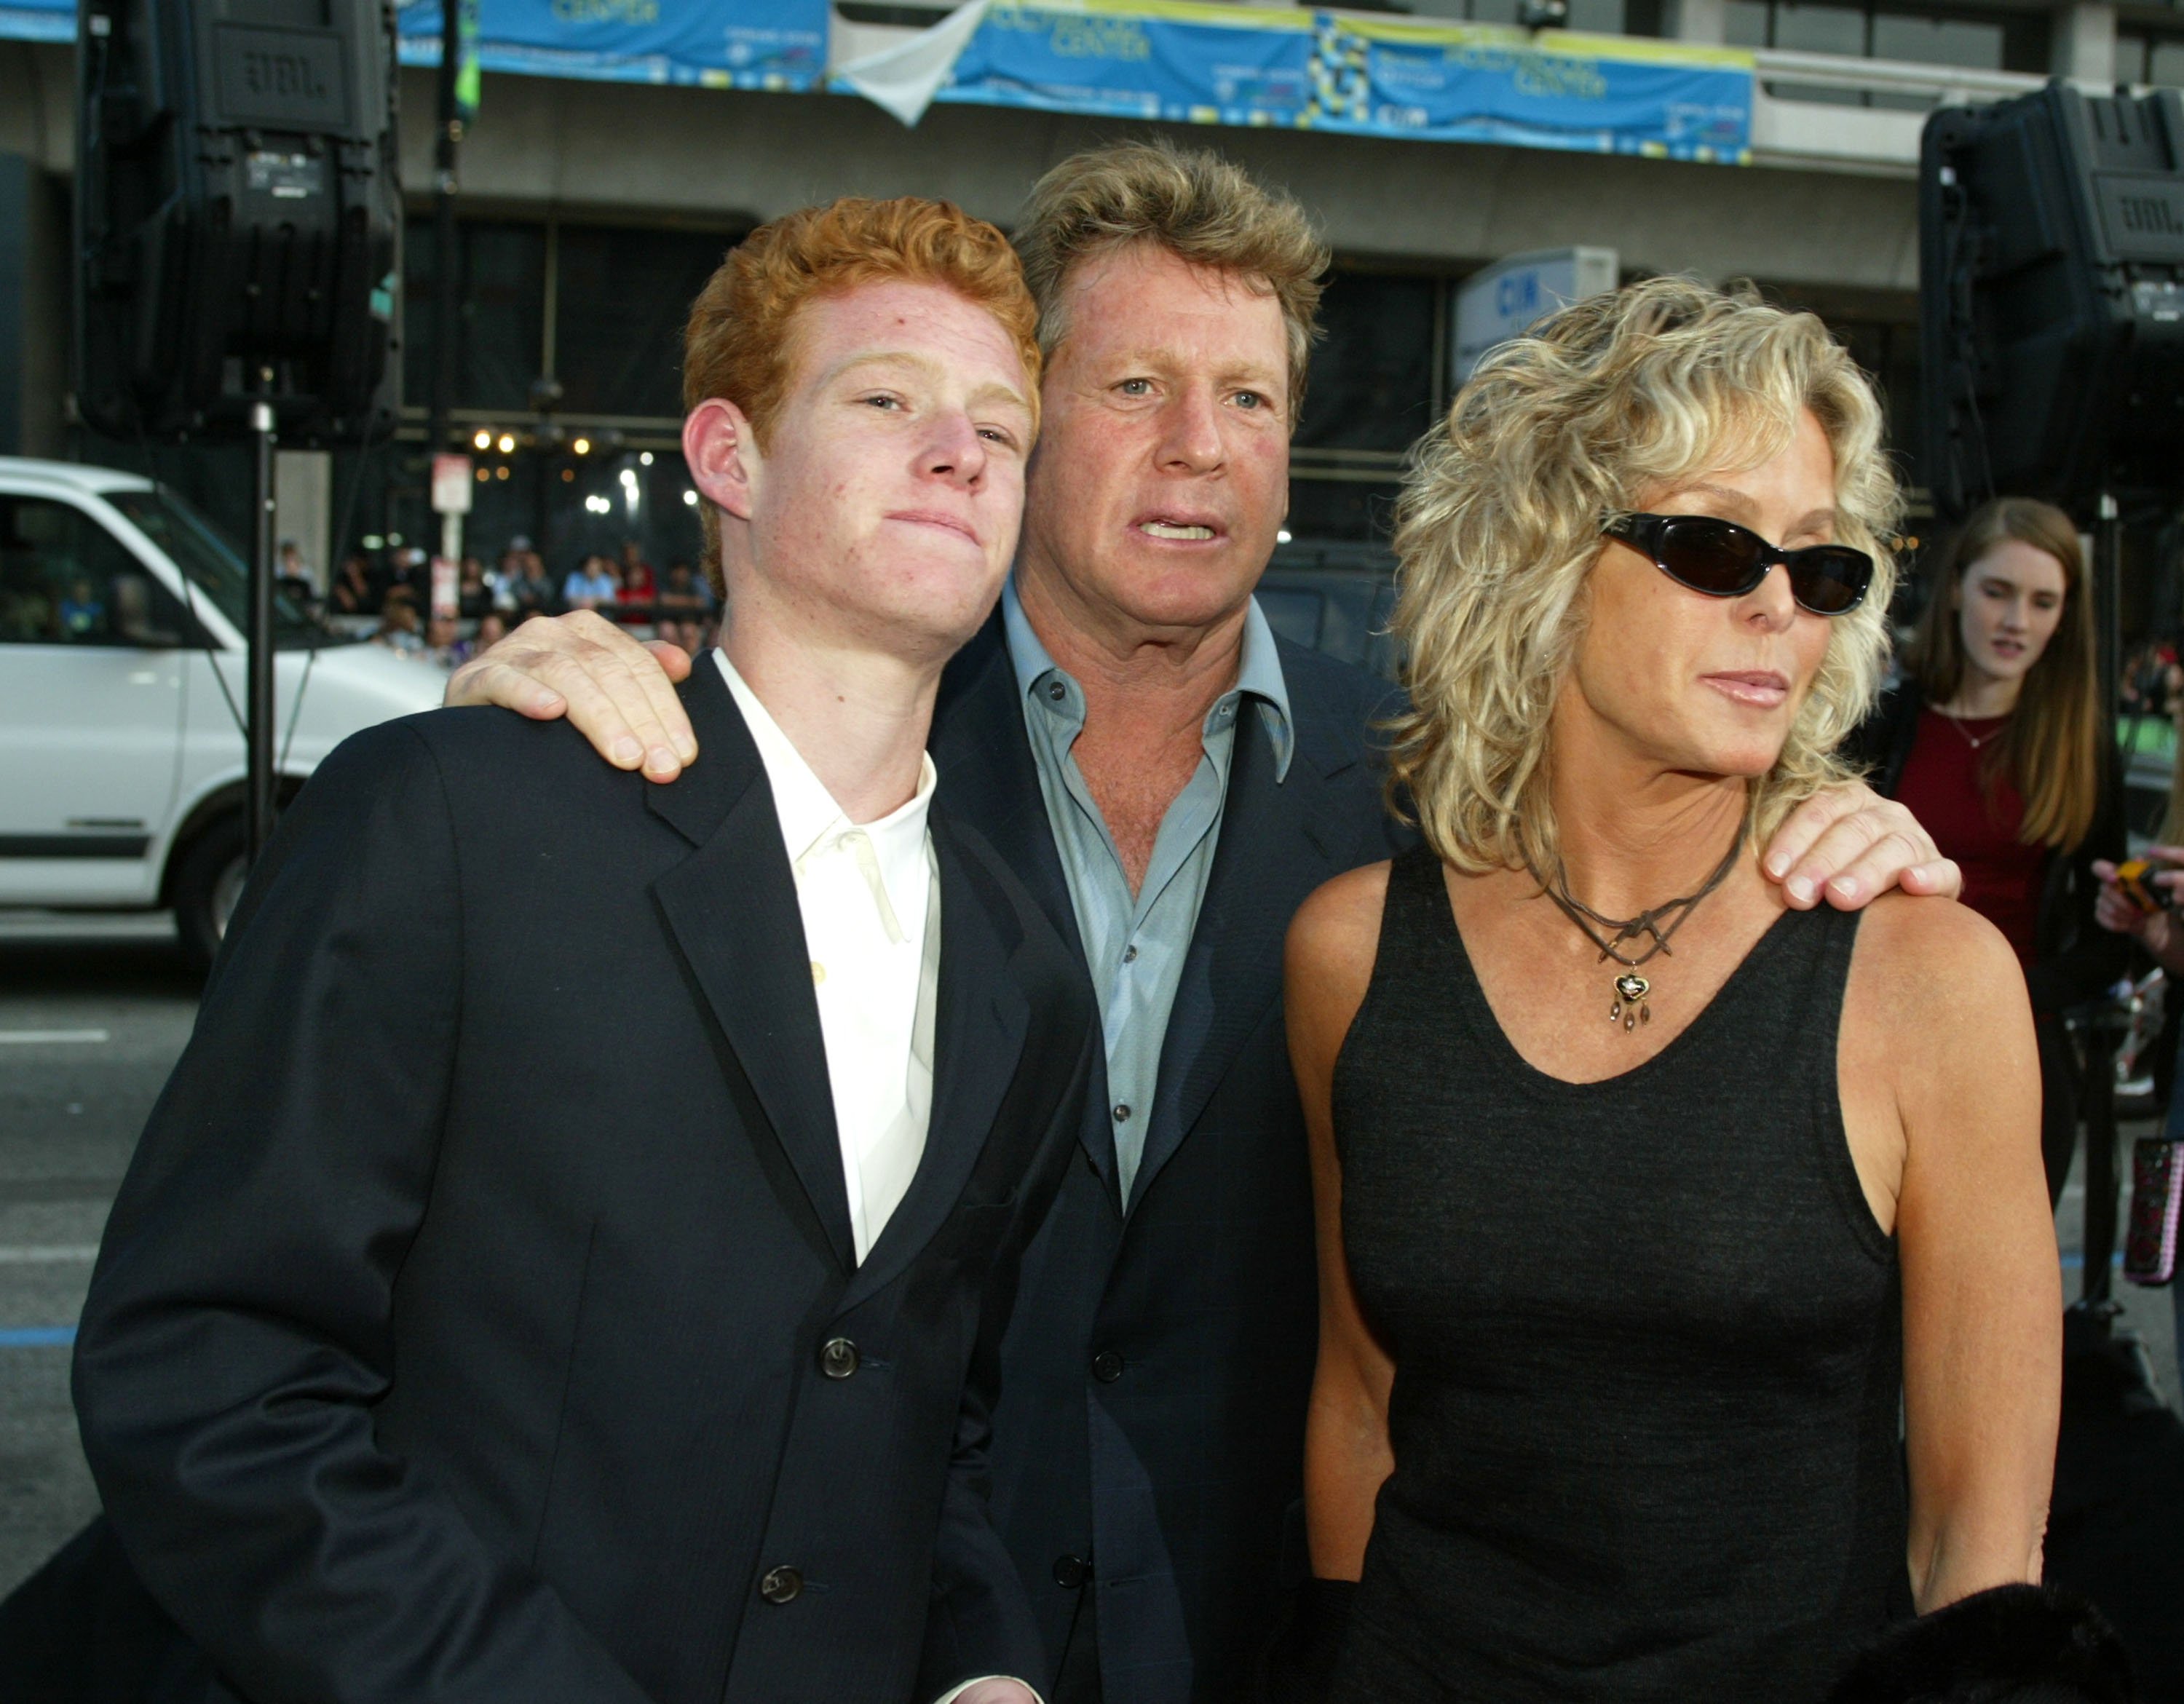 Ryan O'Neal und Farrah Fawcett und ihr Sohn Redmond bei der Premiere von "Malibu's Most Wanted" am 10. April 2003 in Los Angeles, Kalifornien. | Quelle: Getty Images